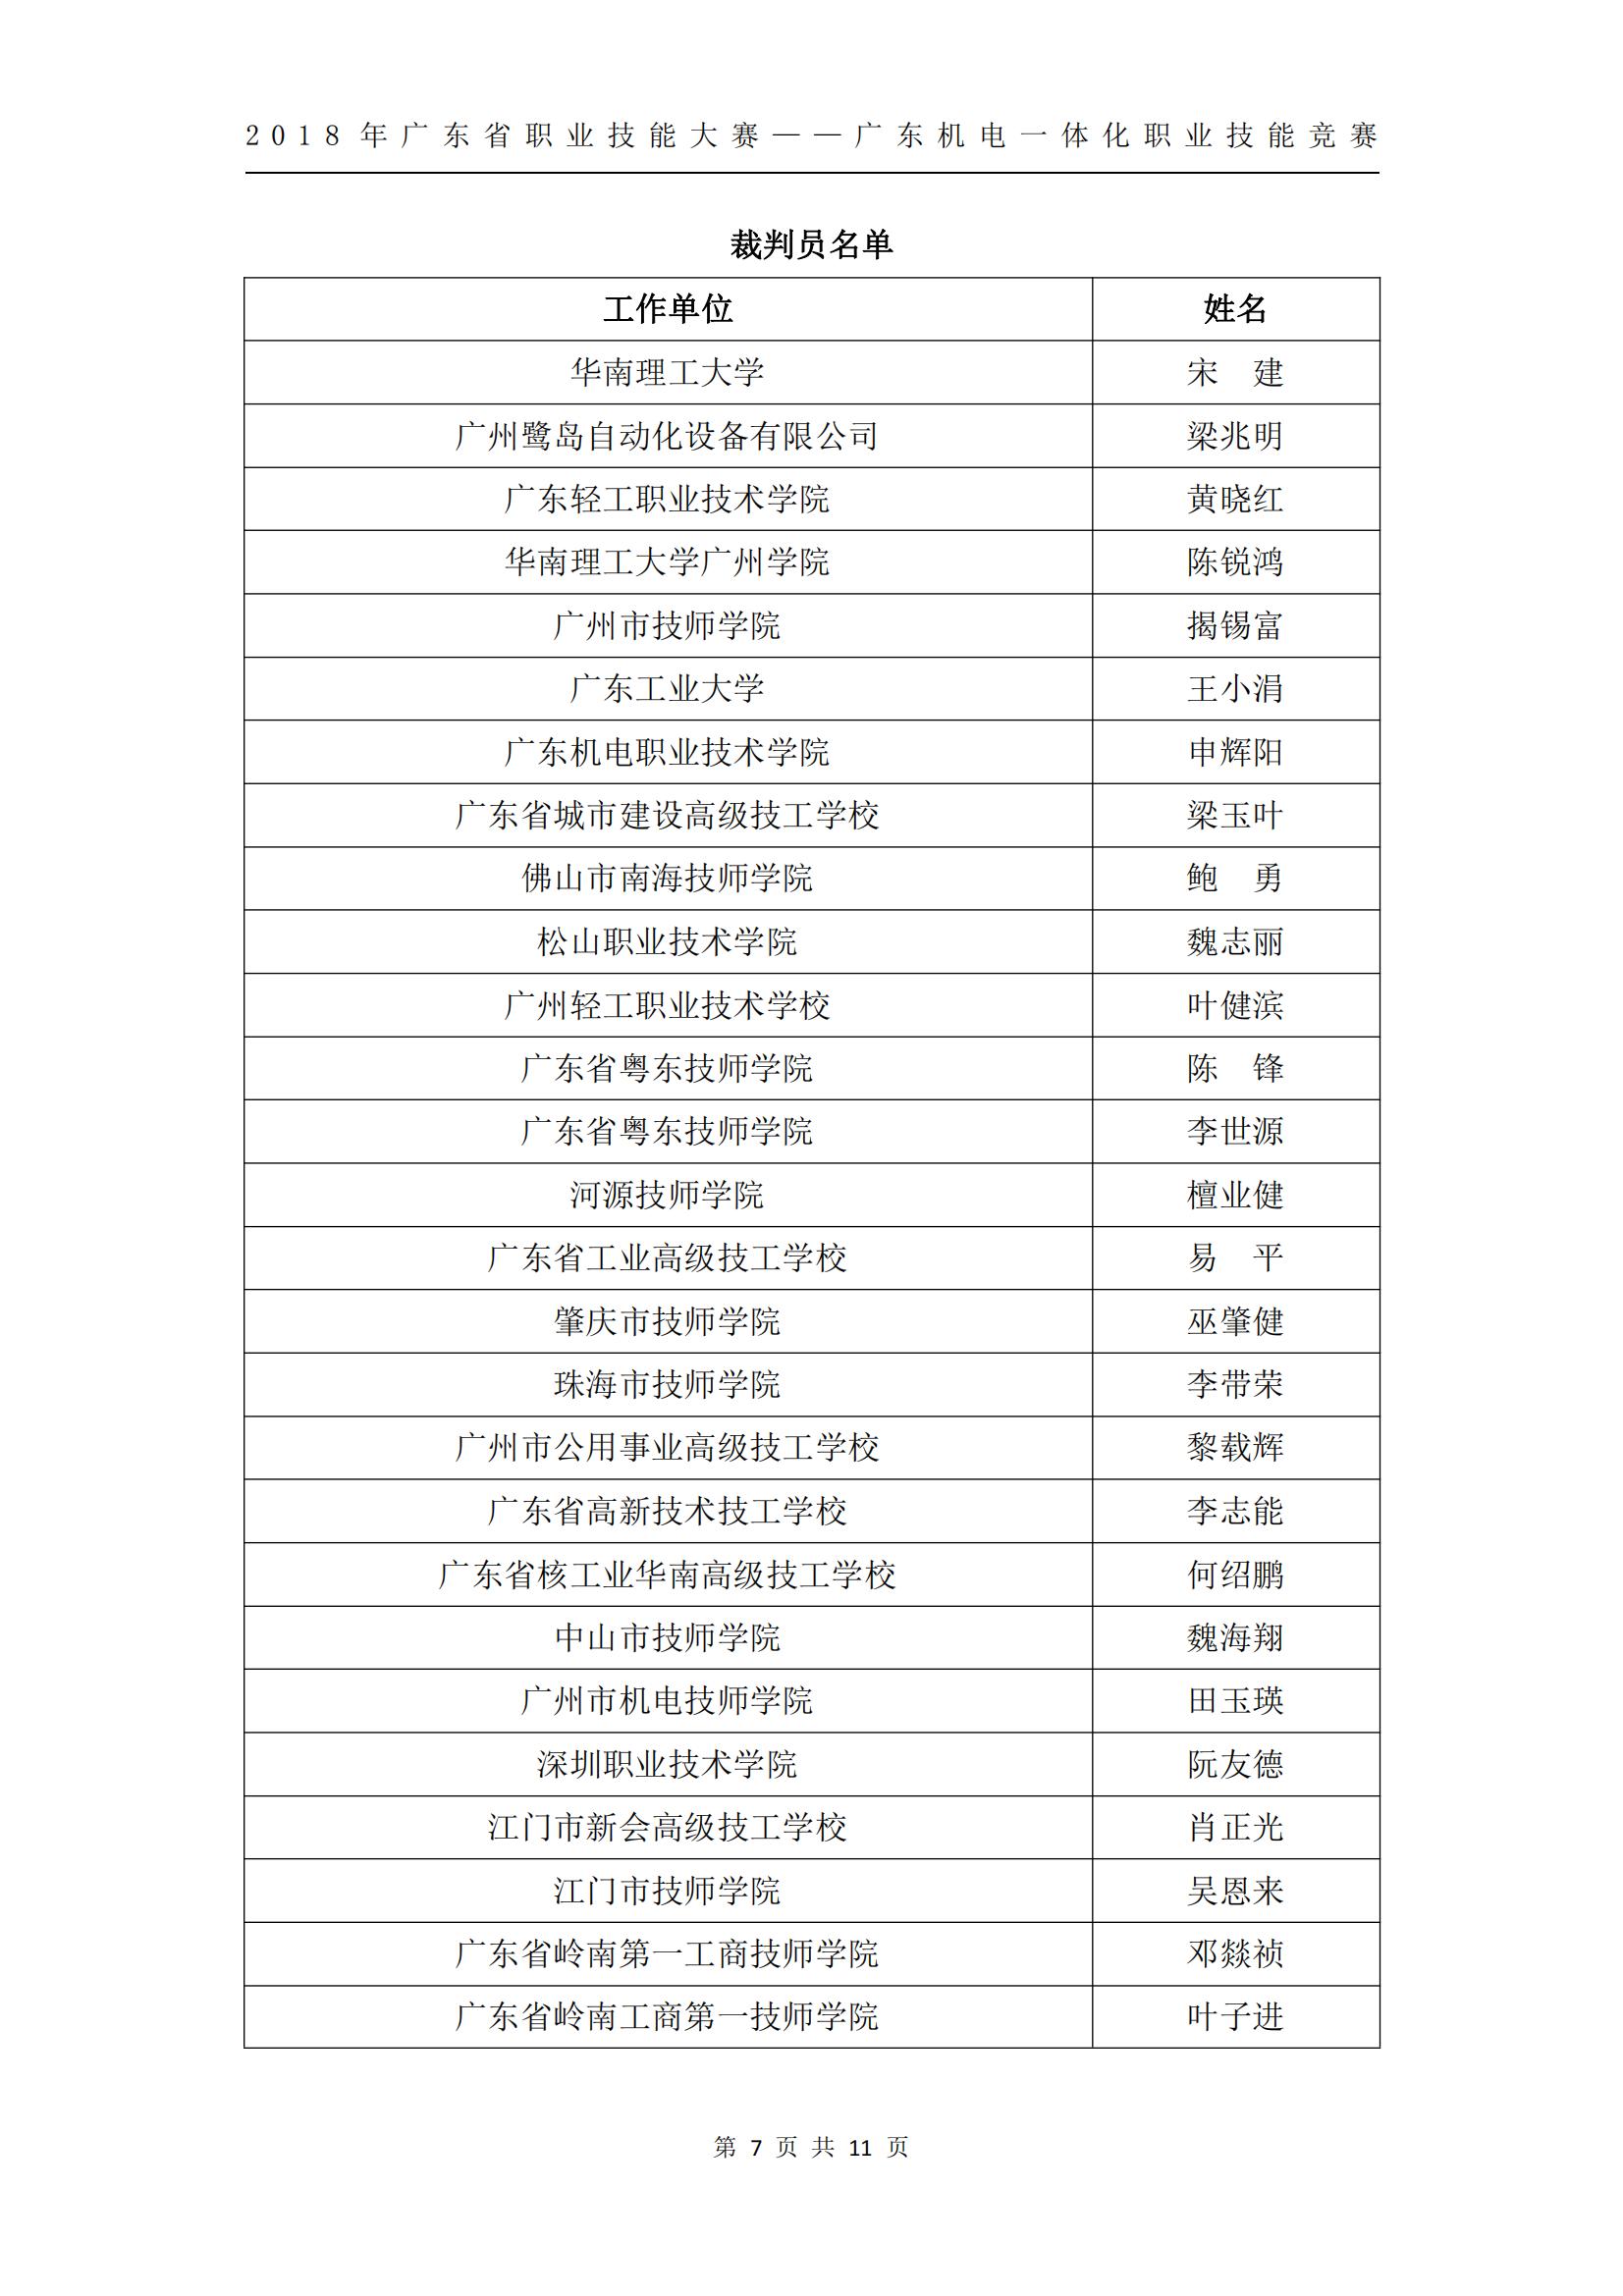 2018 年广东省职业技能大赛——广东机电一体化职业技能竞赛获奖人员和单位公布_06.jpg